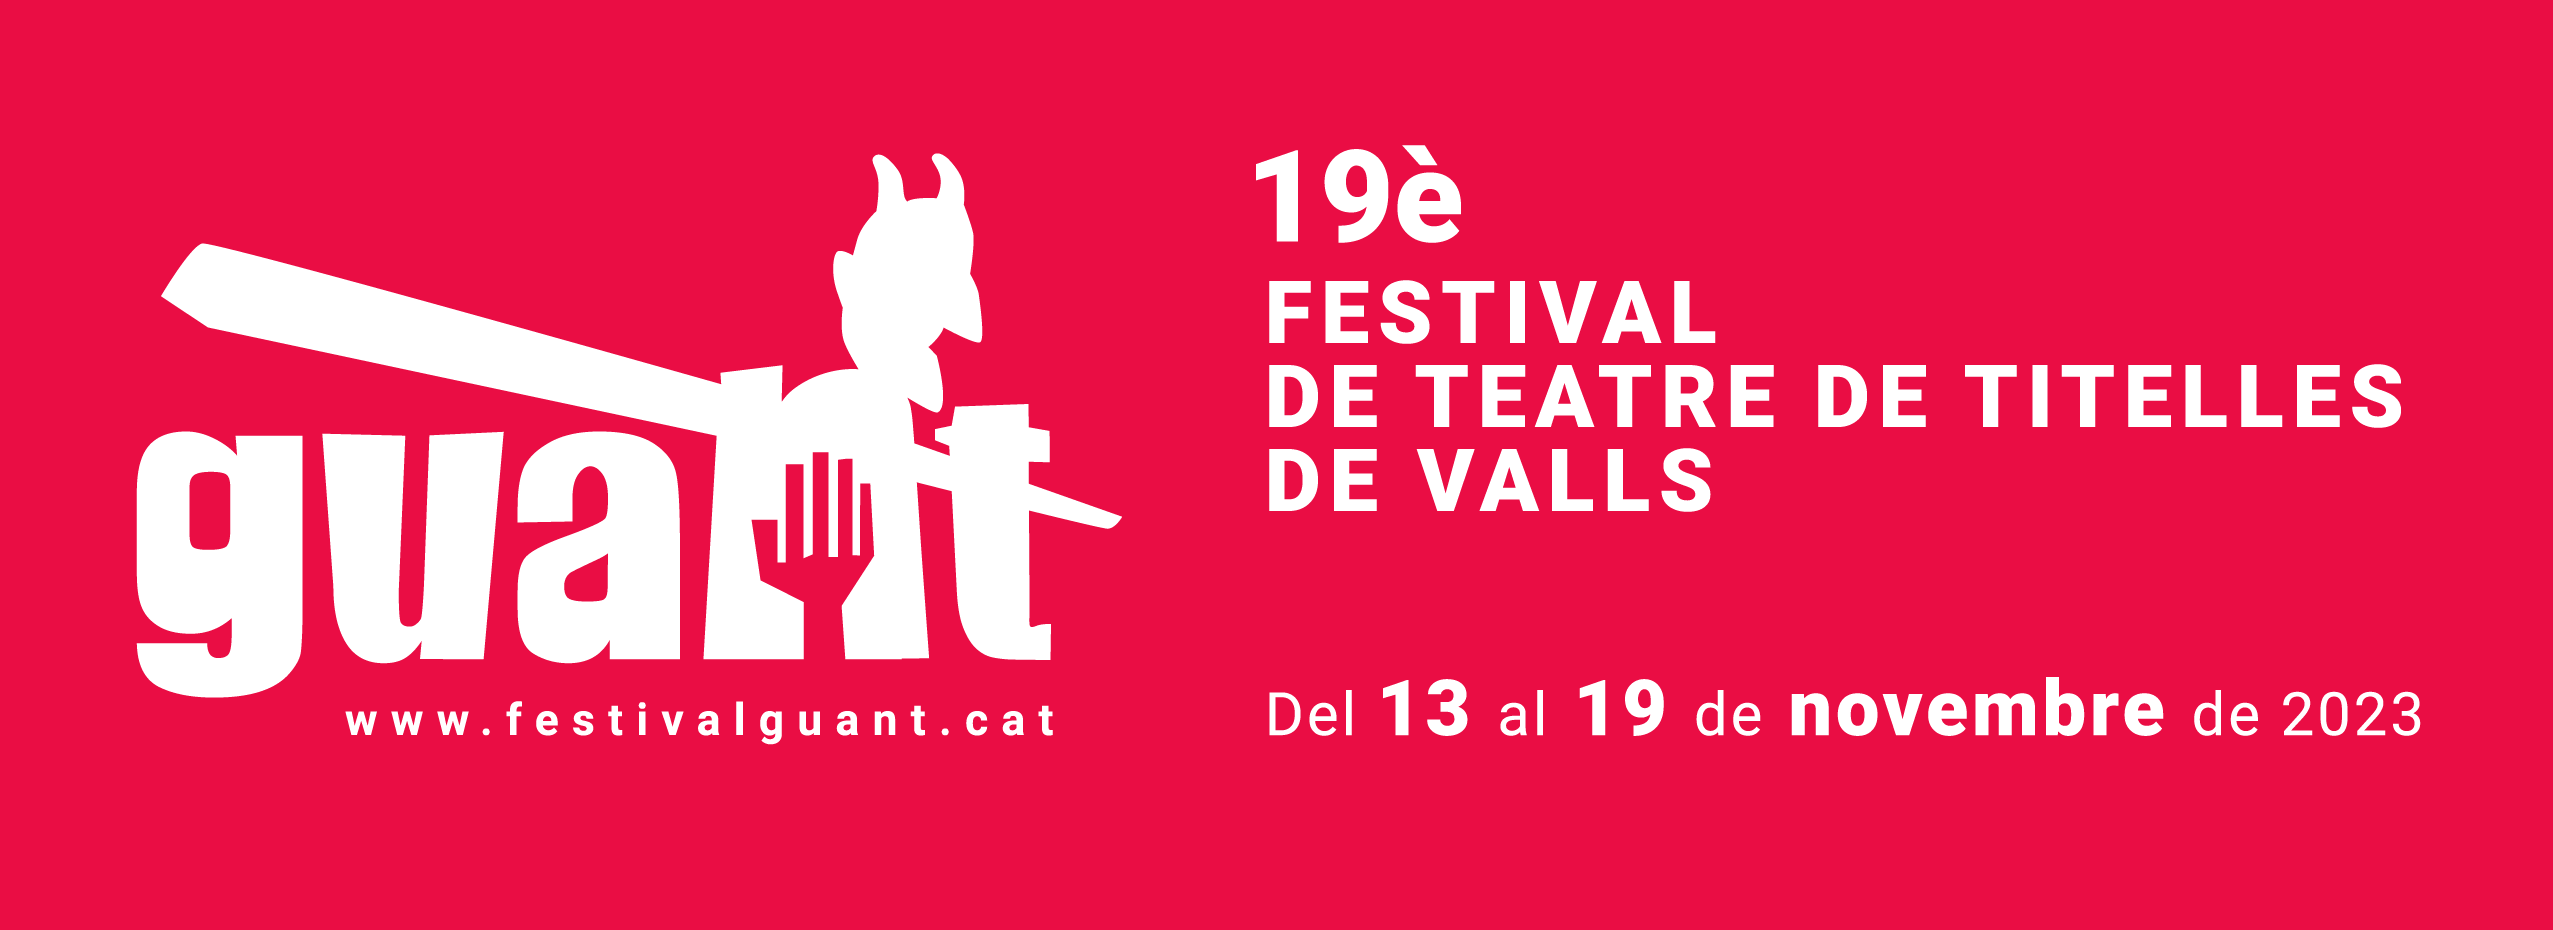 19è Festival internacional de teatre de titelles de Valls | Más información sobre las cookies